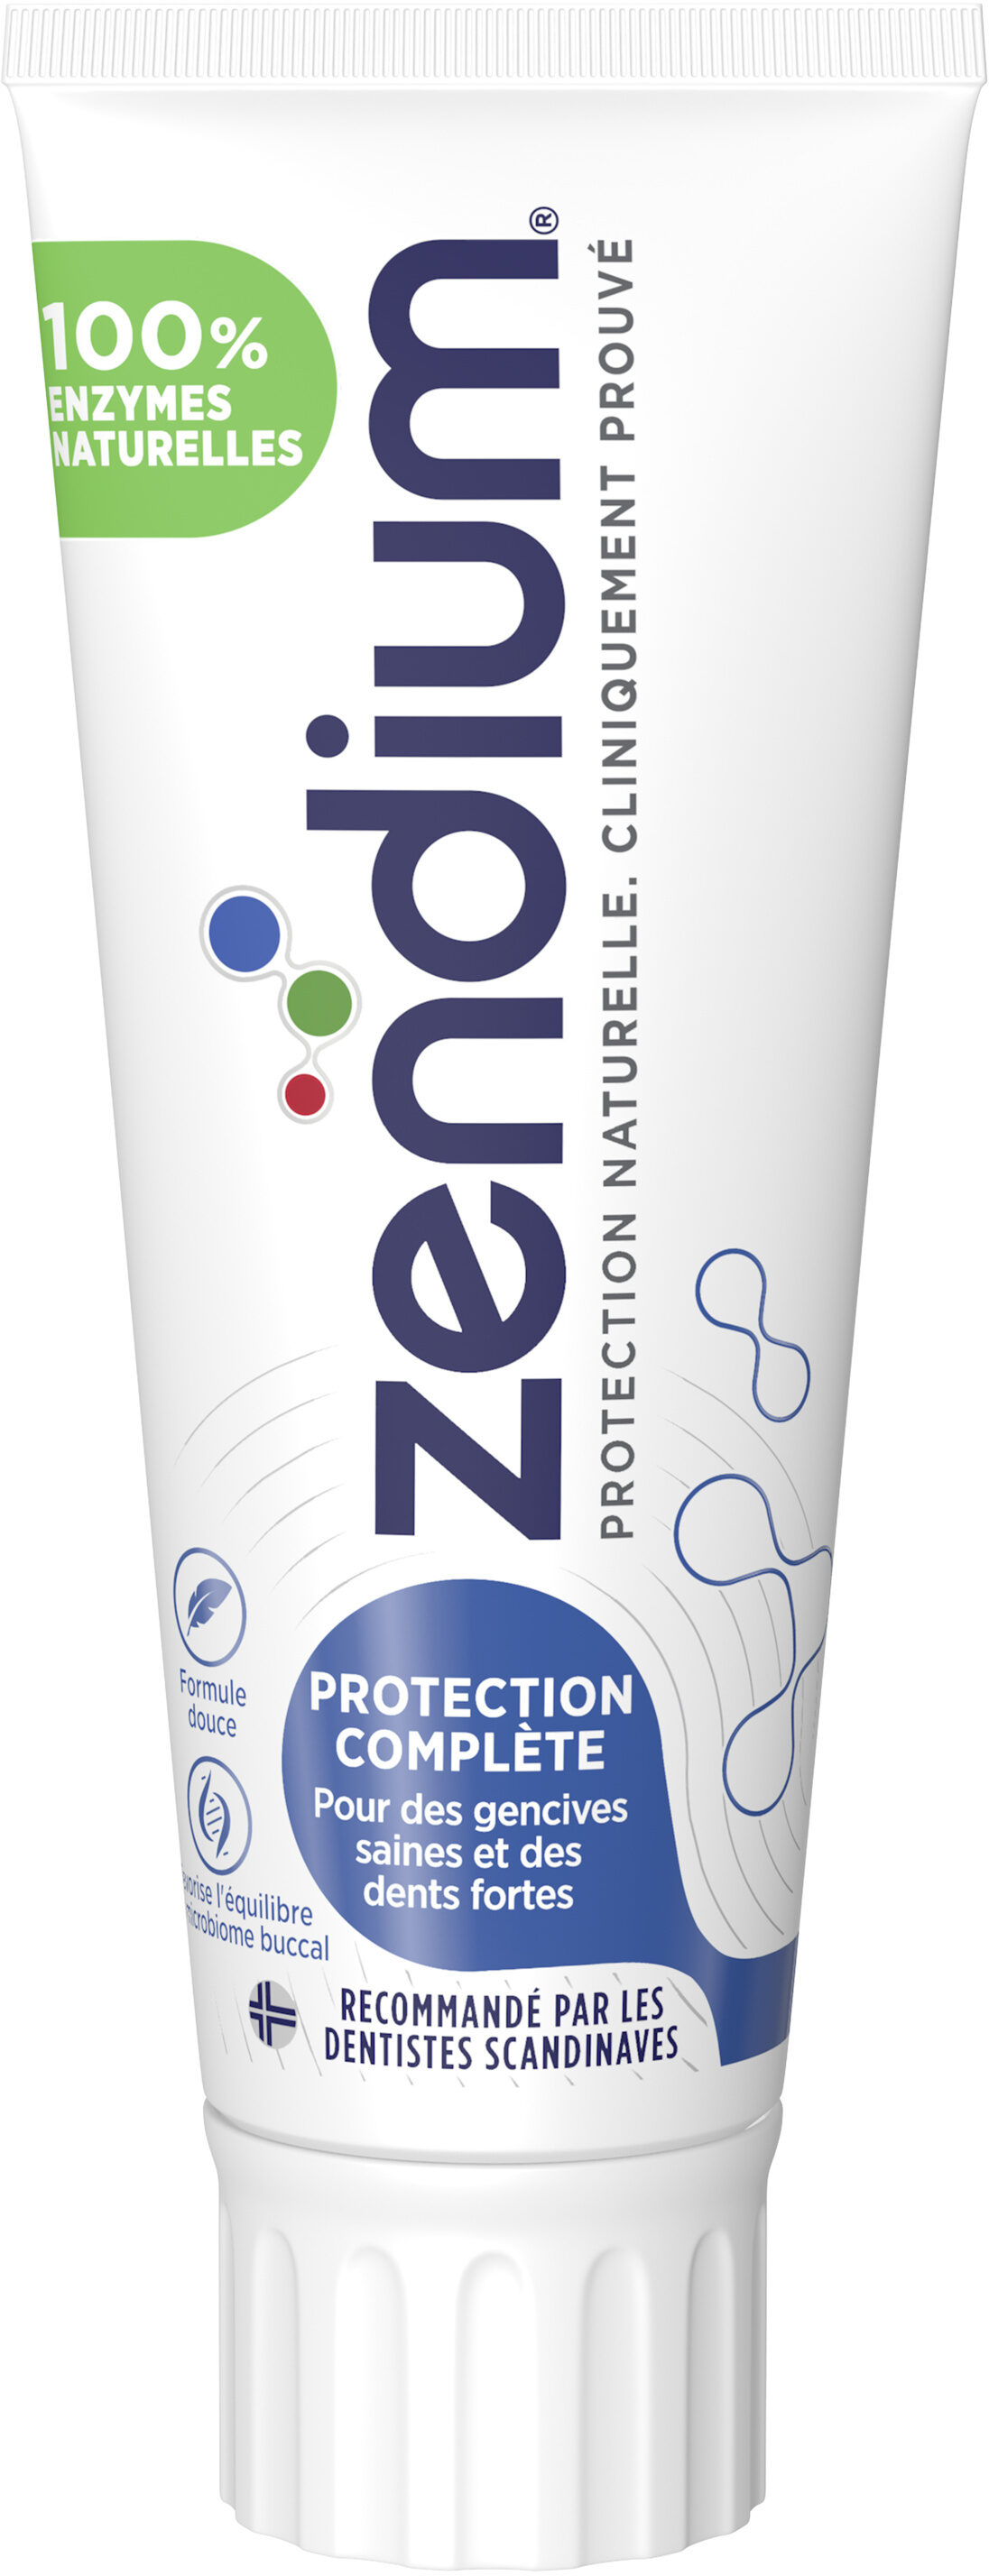 Zendium Dentifrice Protection Complète 75ml - Produit - fr